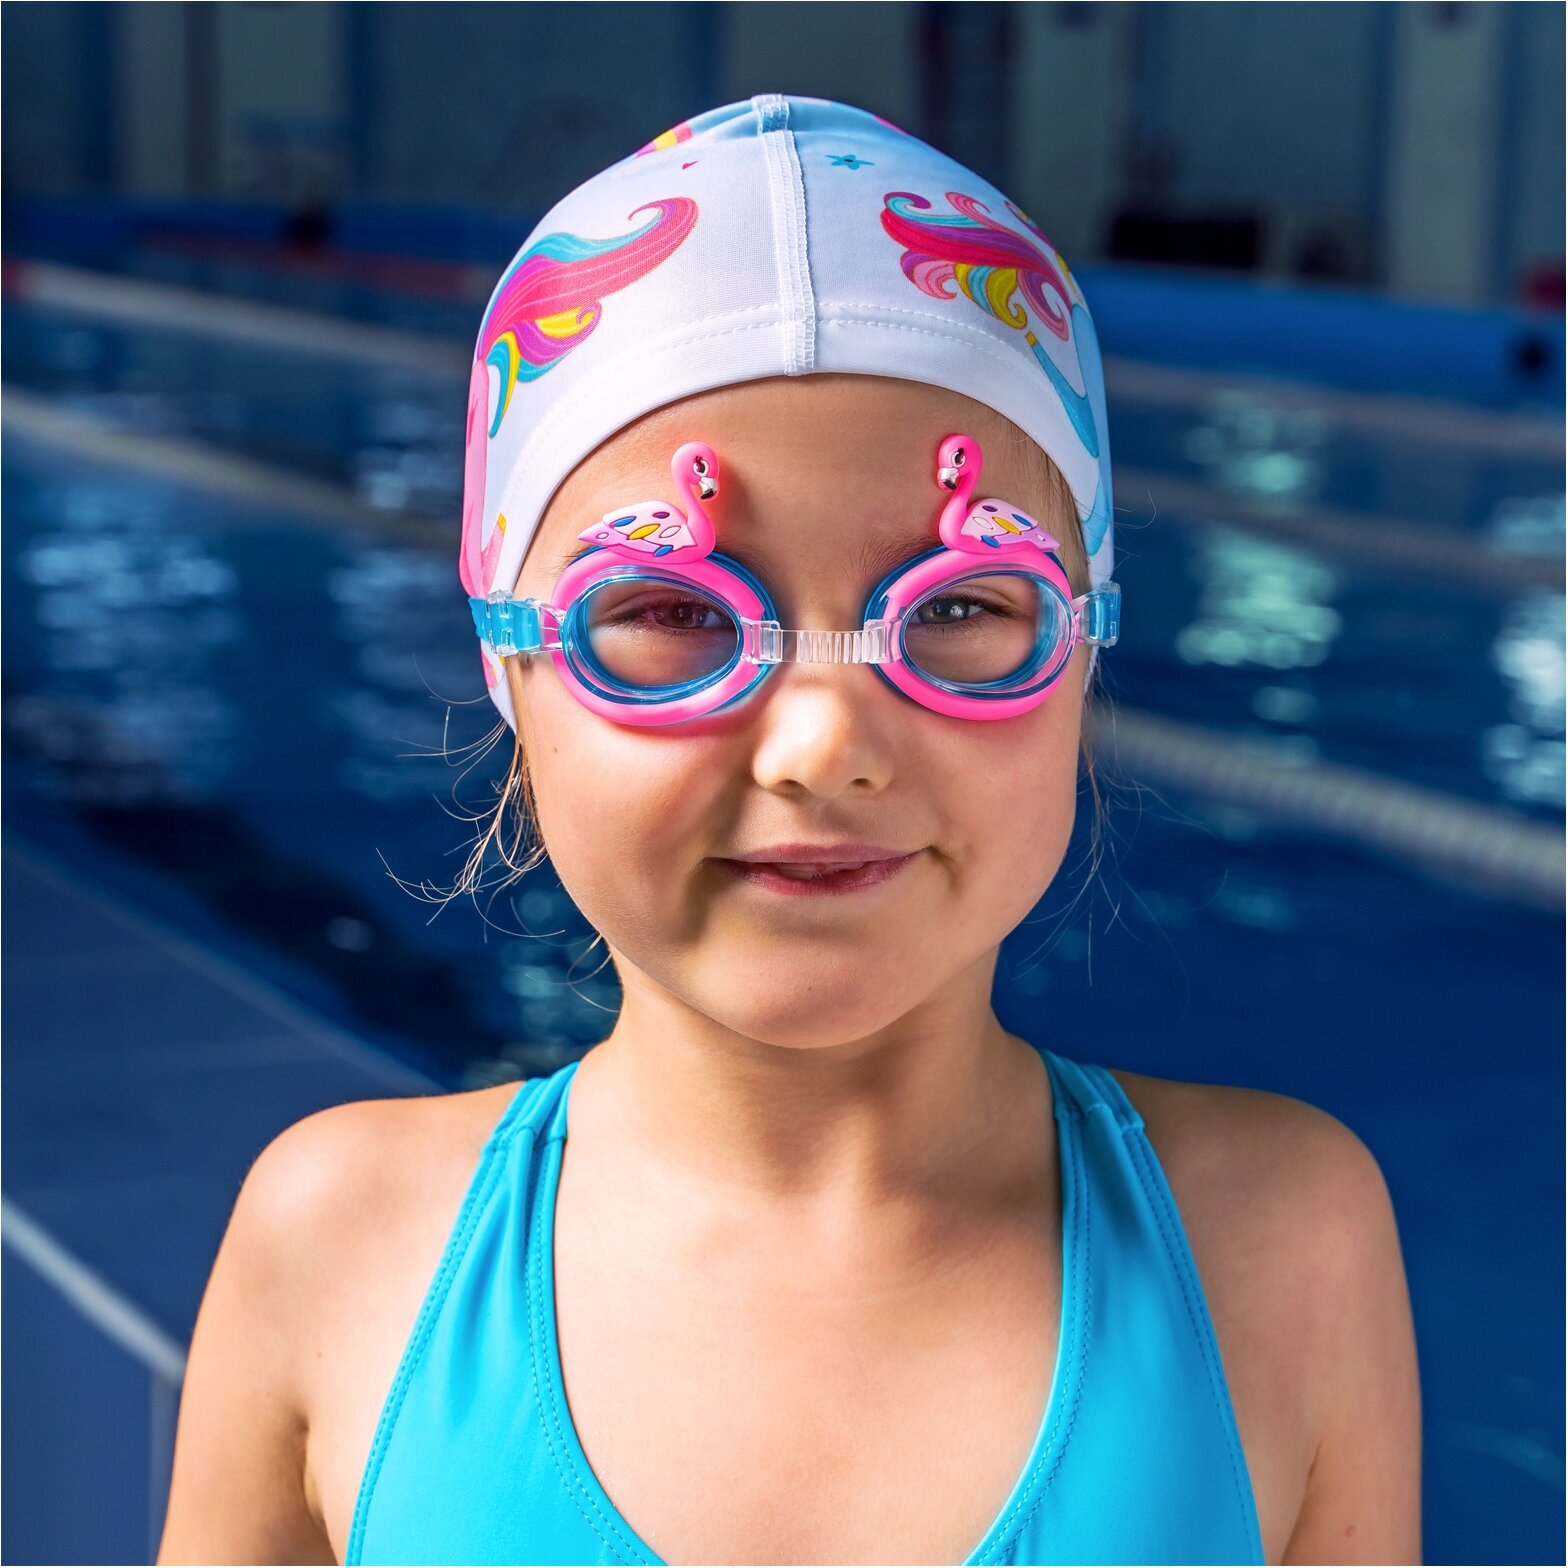 Очки для плавания детские ONLITOP «Фламинго» + беруши, цвета микс